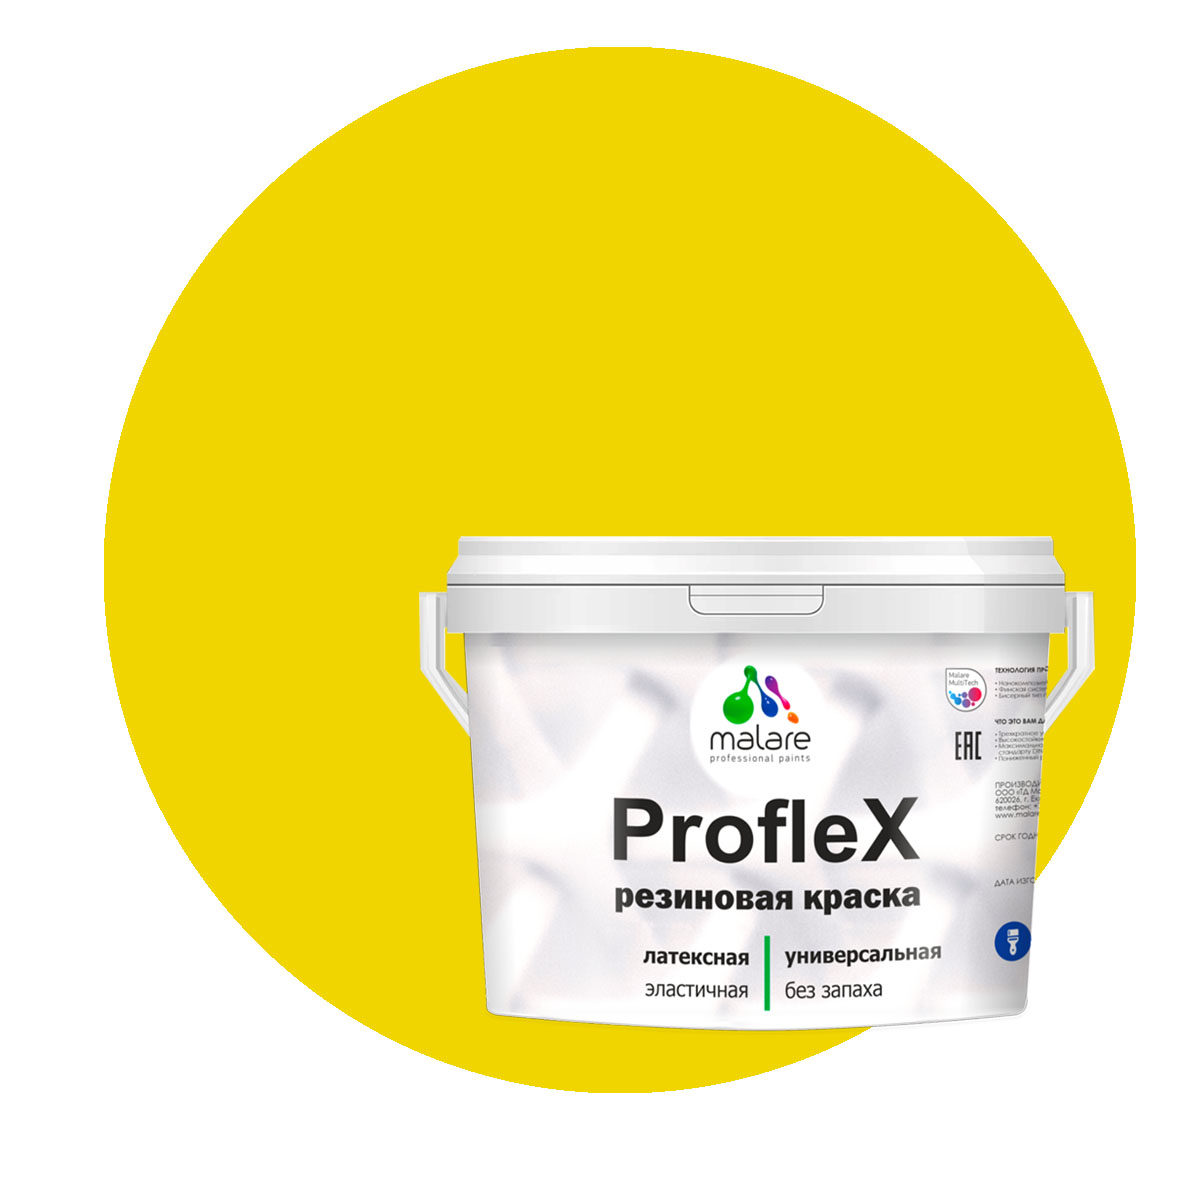 Краска Malare ProfleX для фасадов, интерьера, мебели, весенний адонис, 2 кг. щелочной очиститель фасадов зданий plex